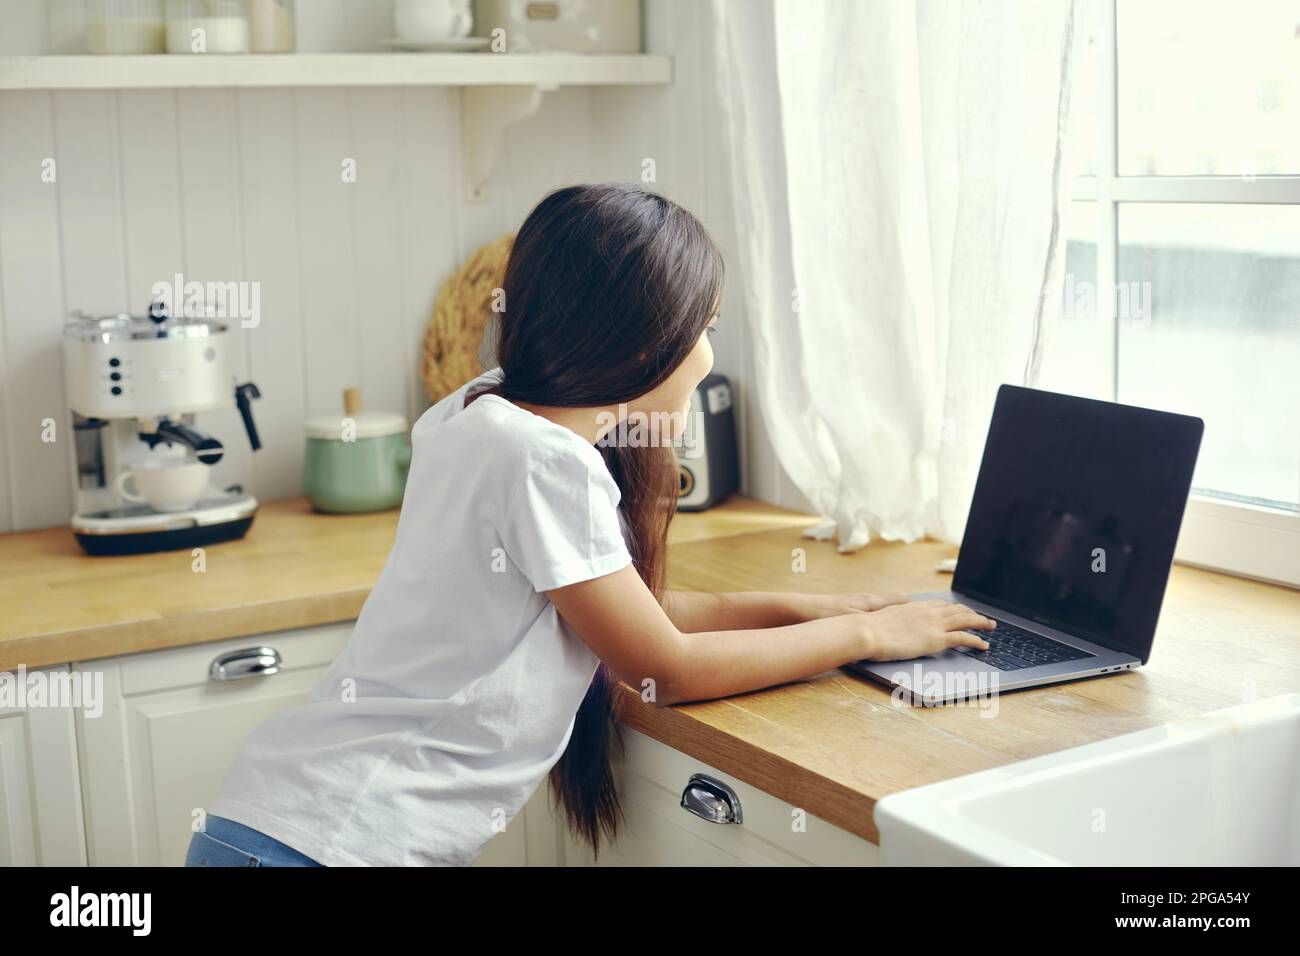 12s fille utiliser le stand d'ordinateur portable dans la cuisine, taper sur le clavier, rechercher des informations, faire la tâche, étudier en ligne, discuter avec des amis via les réseaux sociaux ou m Banque D'Images